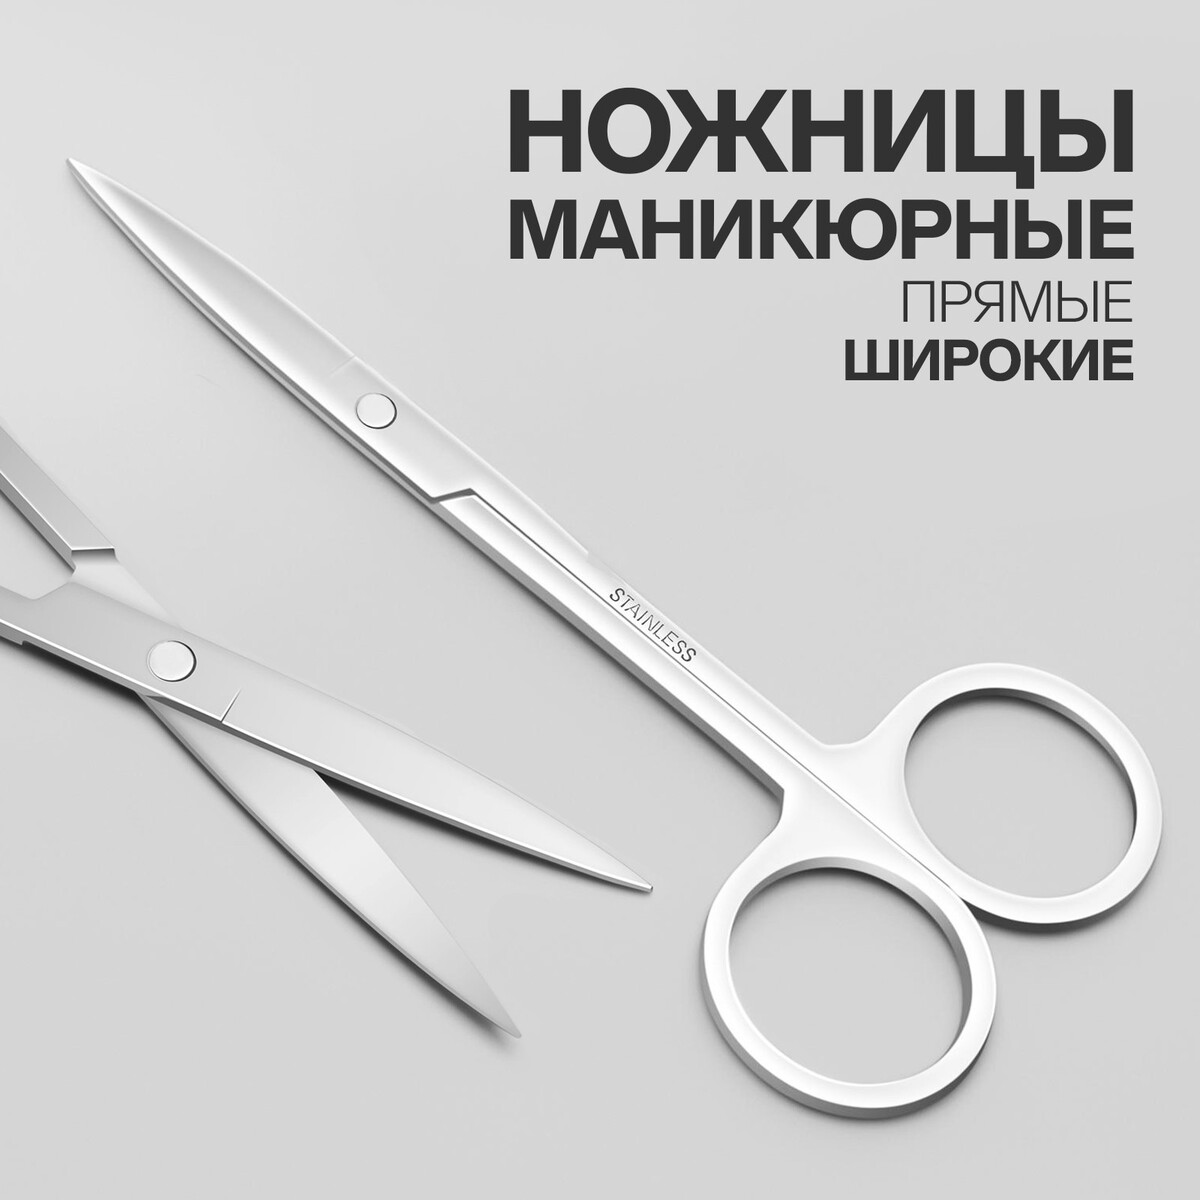 Ножницы маникюрные, прямые, широкие, 12 см, цвет серебристый ножницы маникюрные прямые складные 9 см серебристый